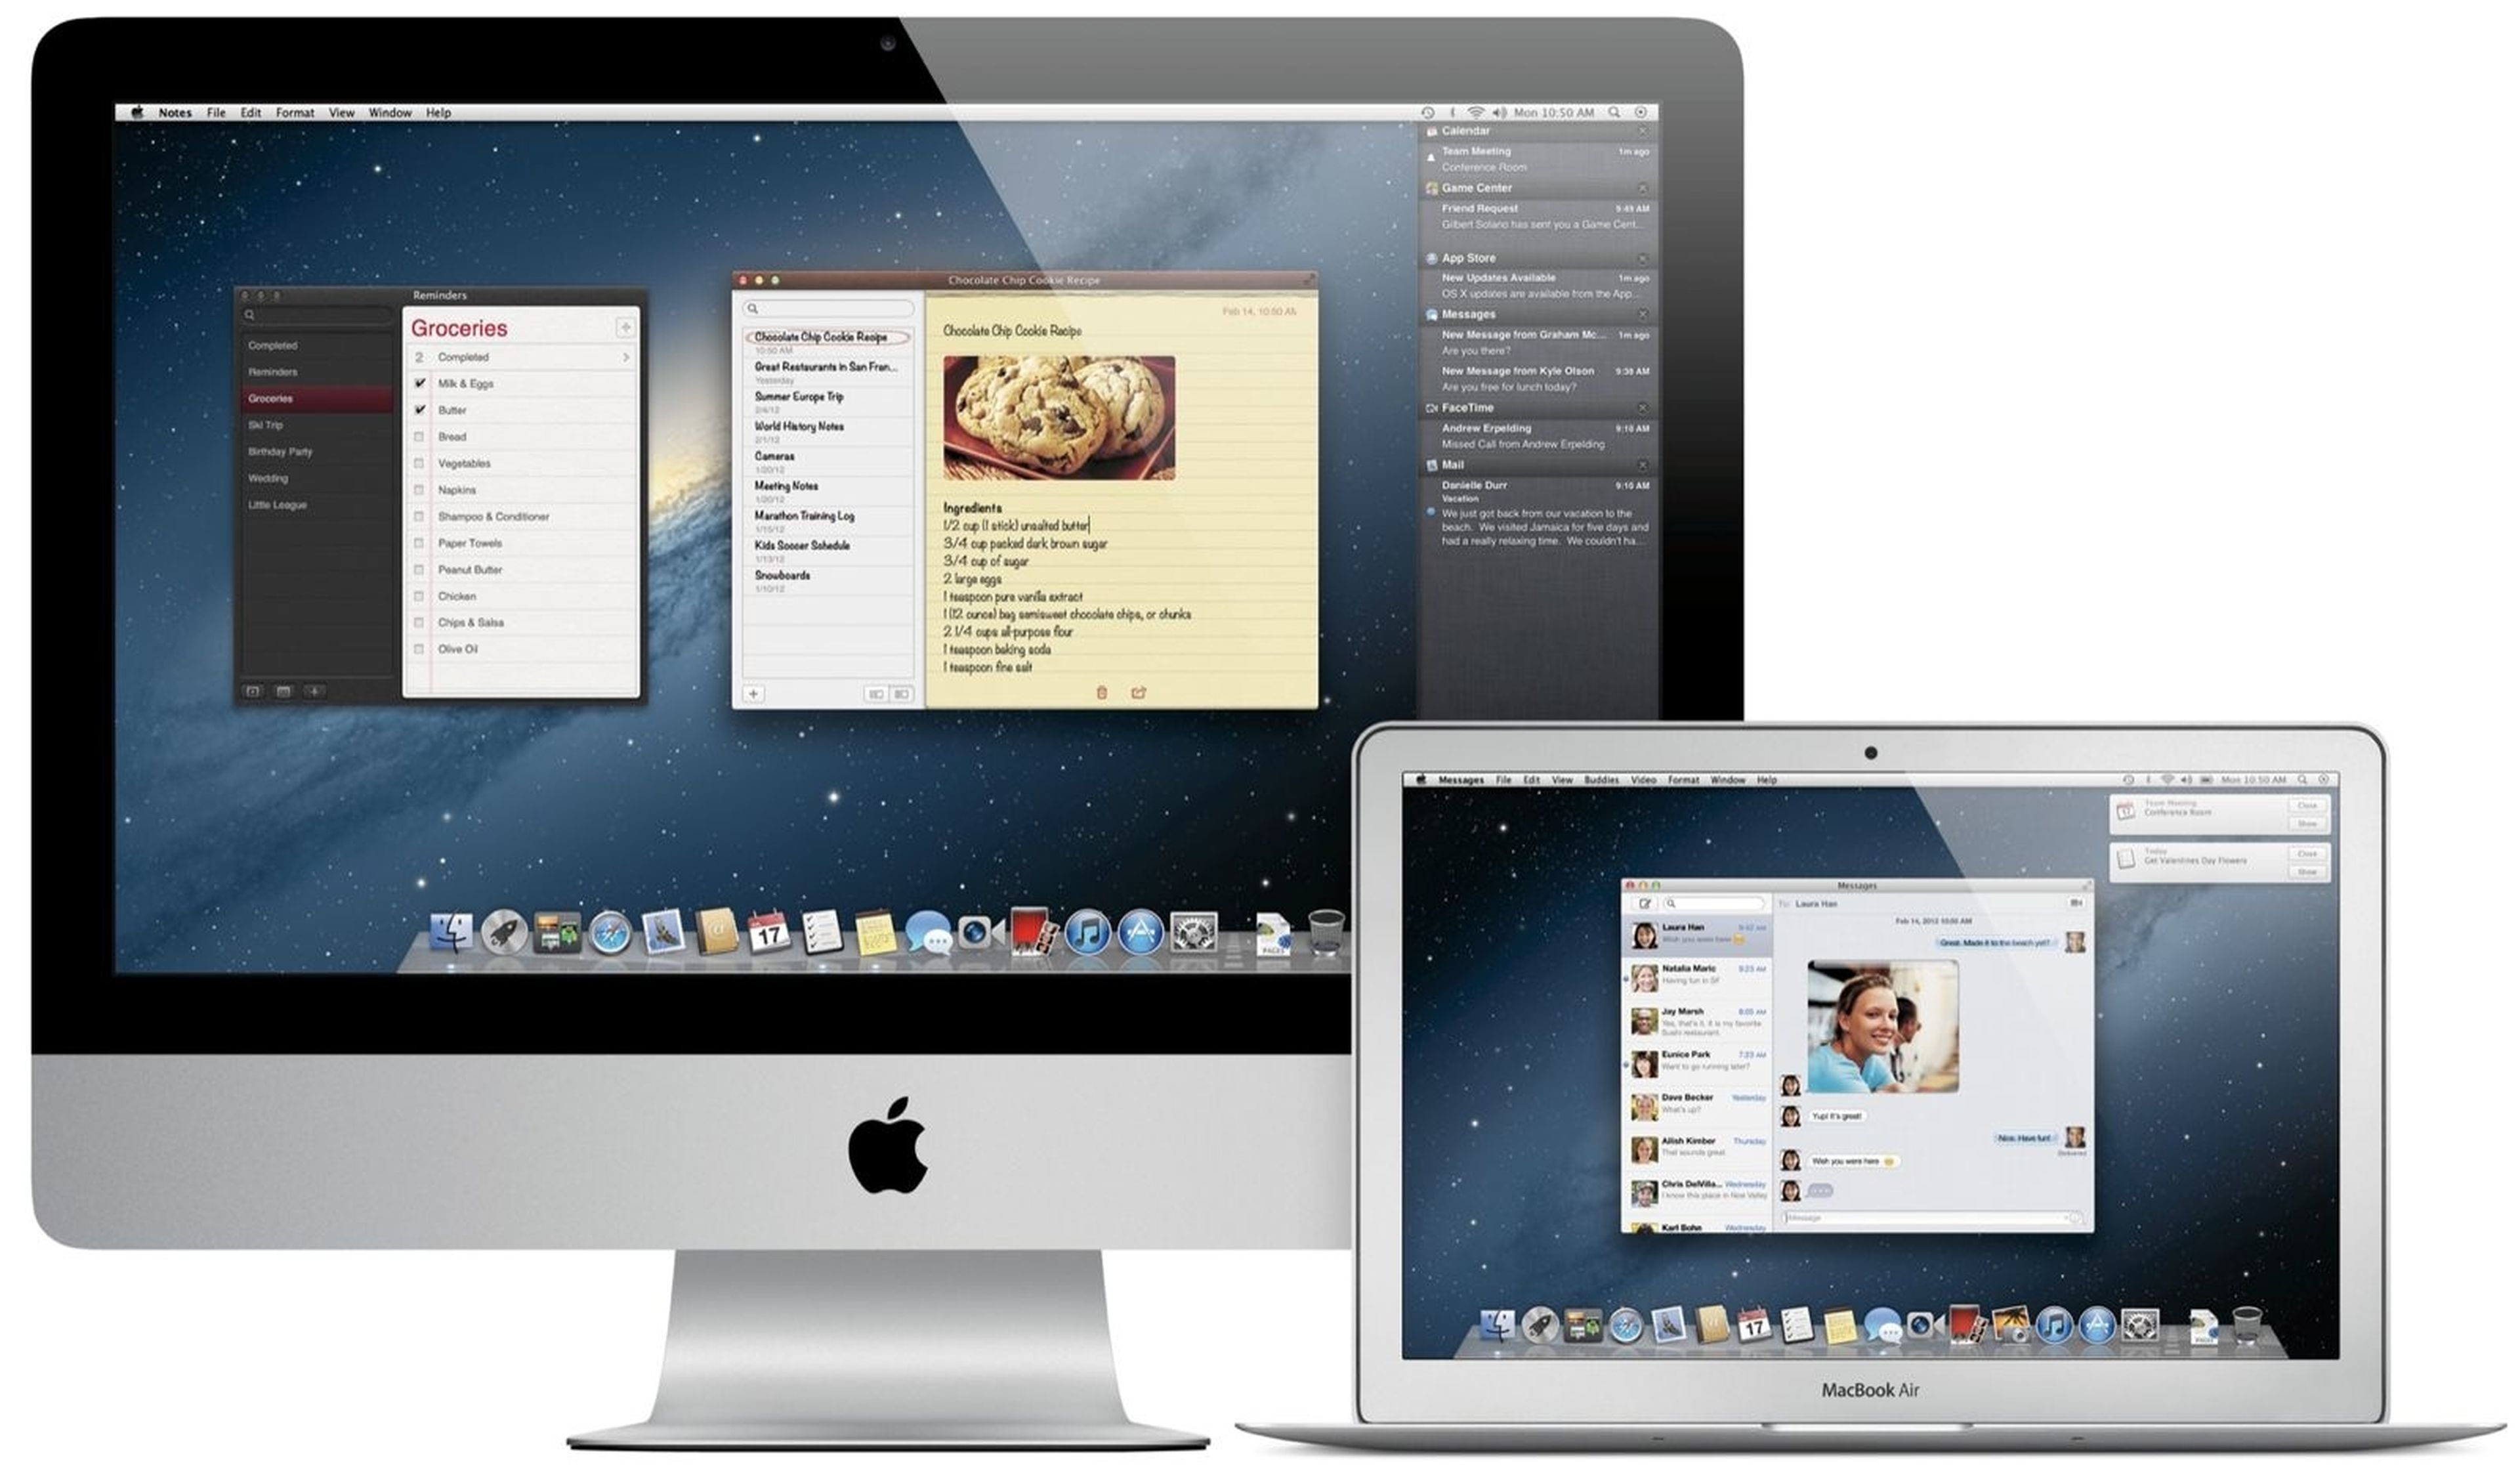 Llega el Macbook Air y iMac con pantalla Retina